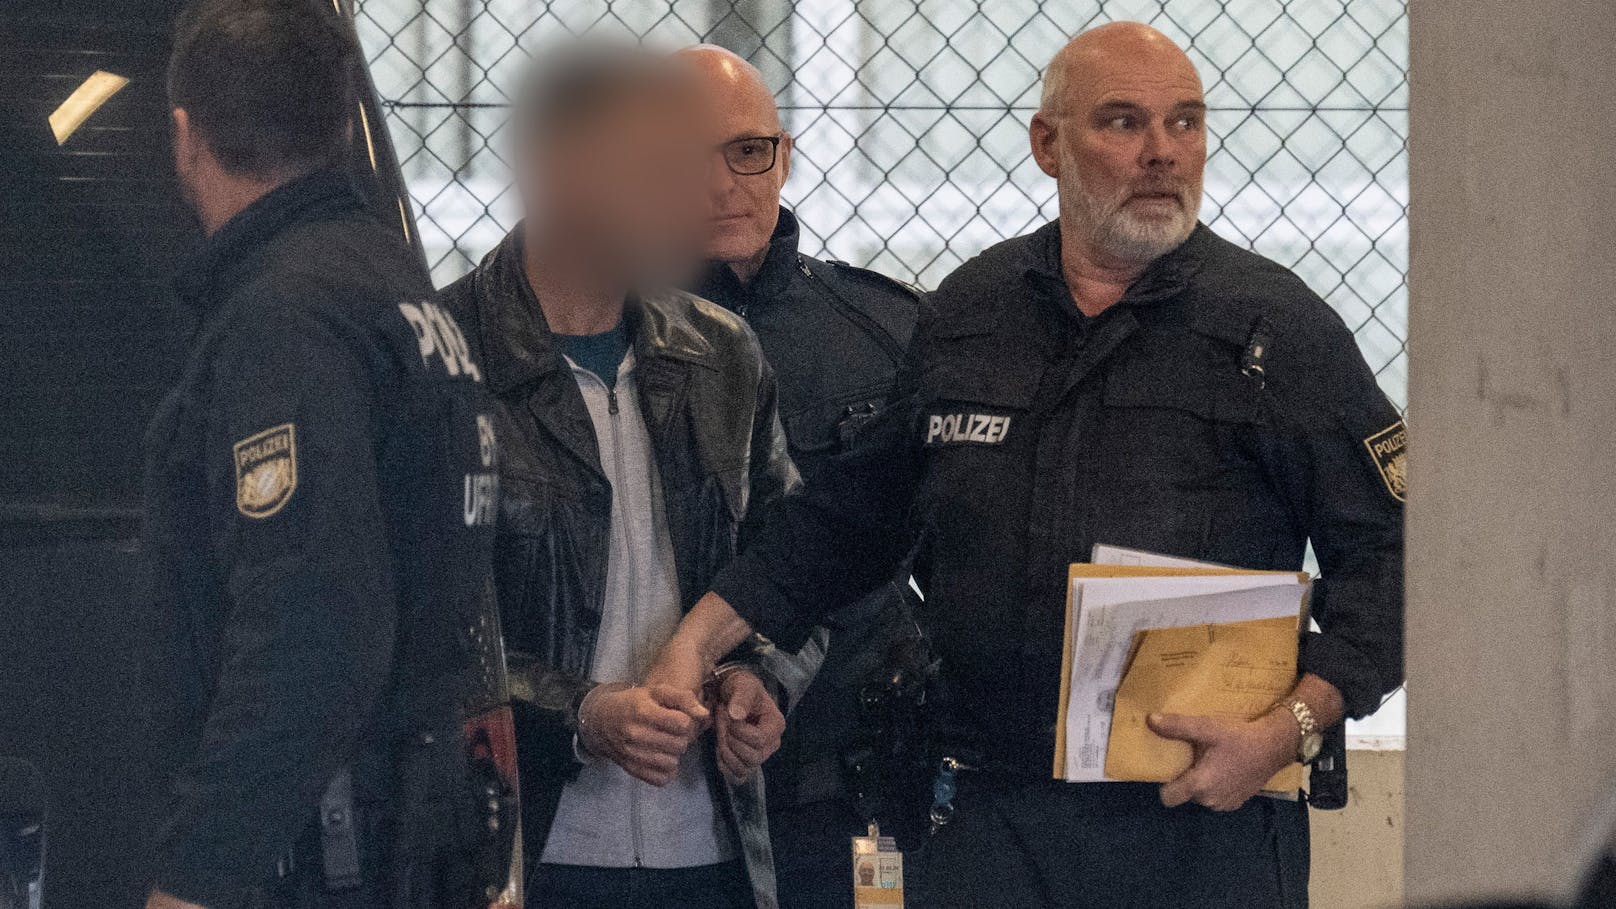 Polizisten führen den Mörder des 2005 ermordeten Münchener Modemachers Moshammer am Flughafen zu seinem Abschiebeflug.